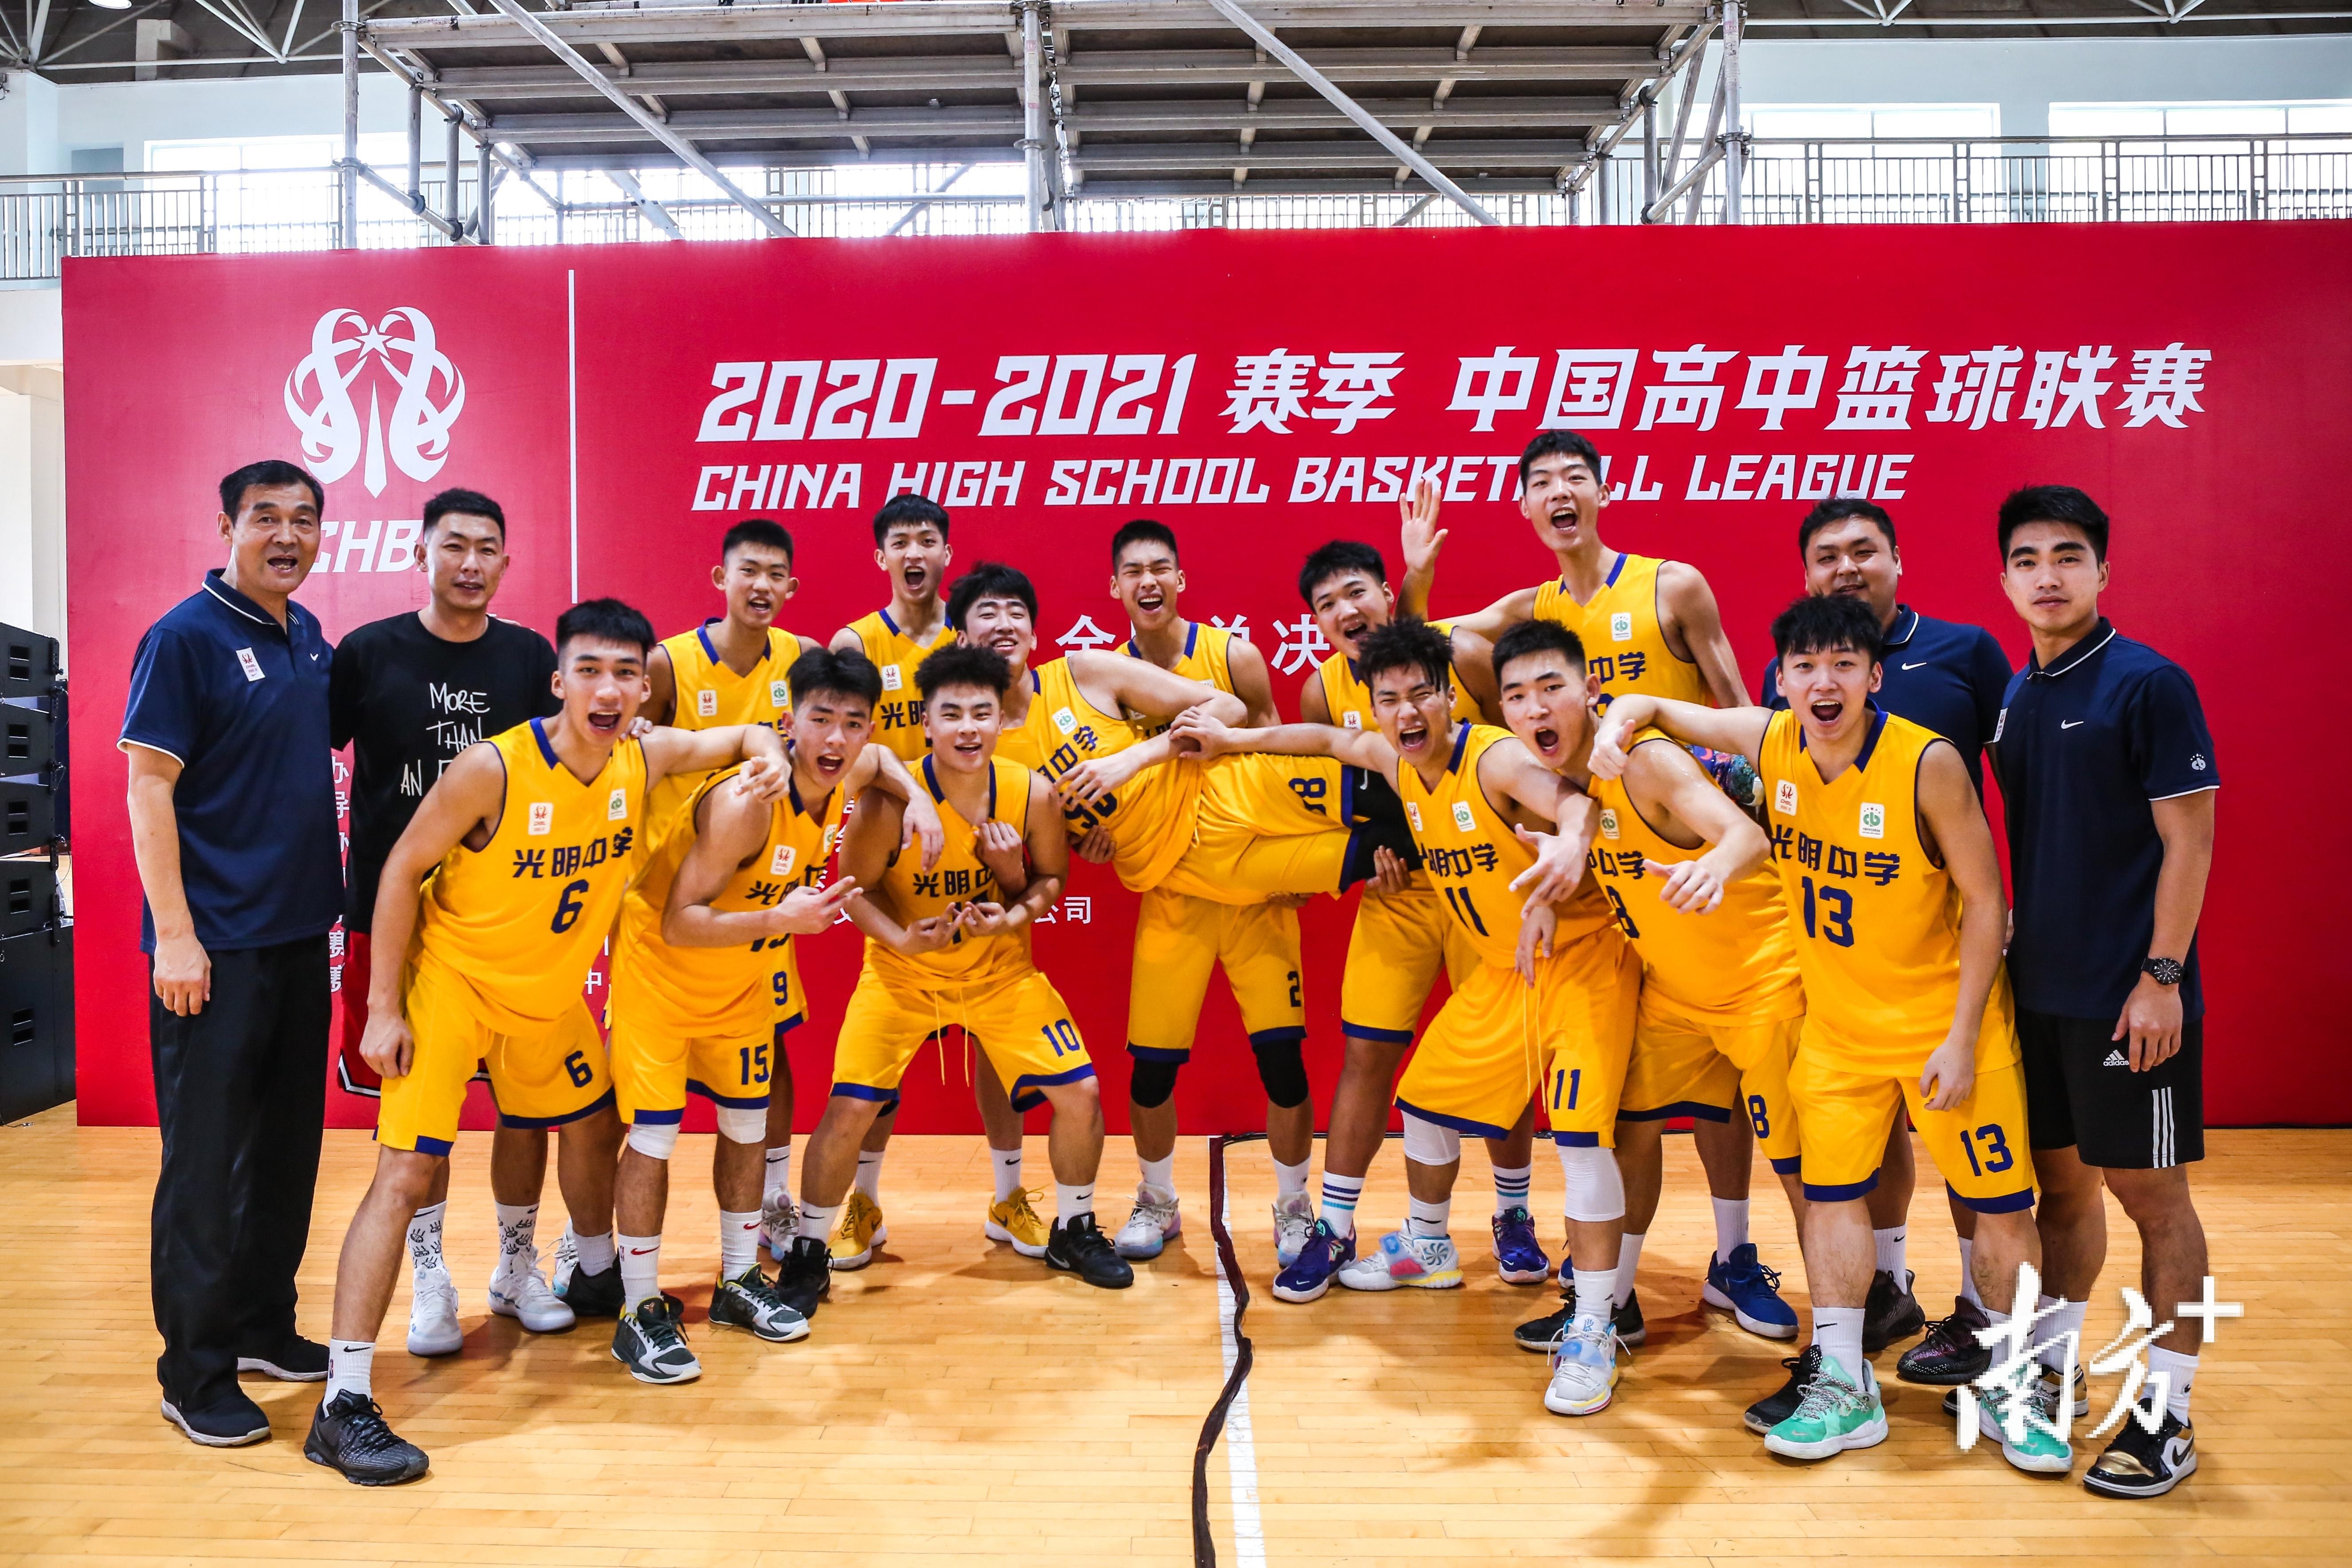 获中国高中篮球联赛季军, 东莞光明中学明年将继续冲冠